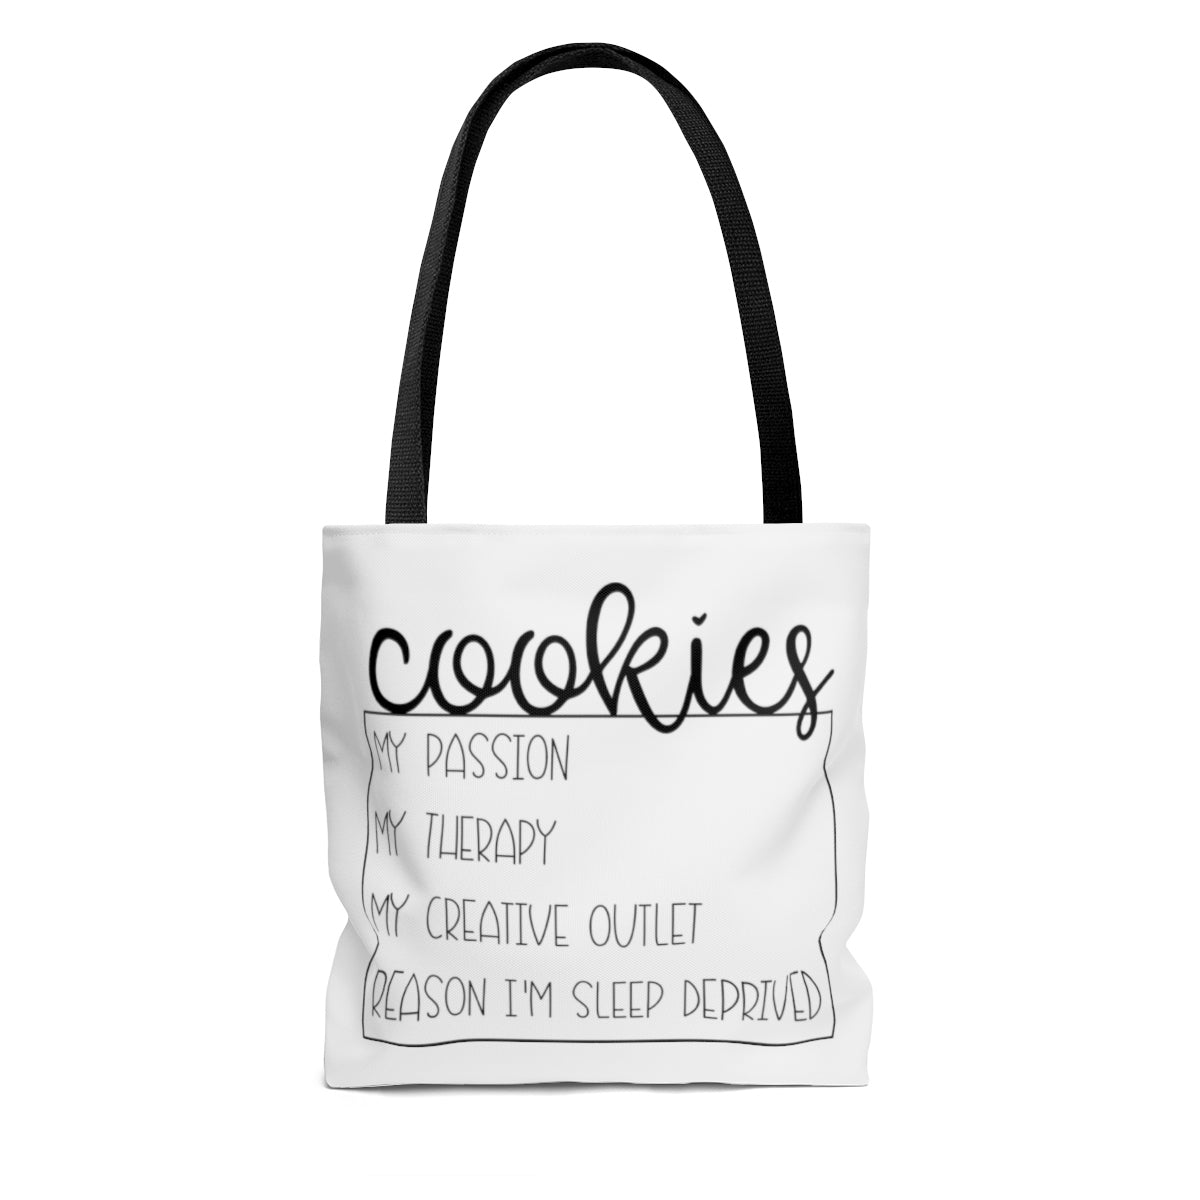 Cookies are my Side Hustle AOP Tote Bag